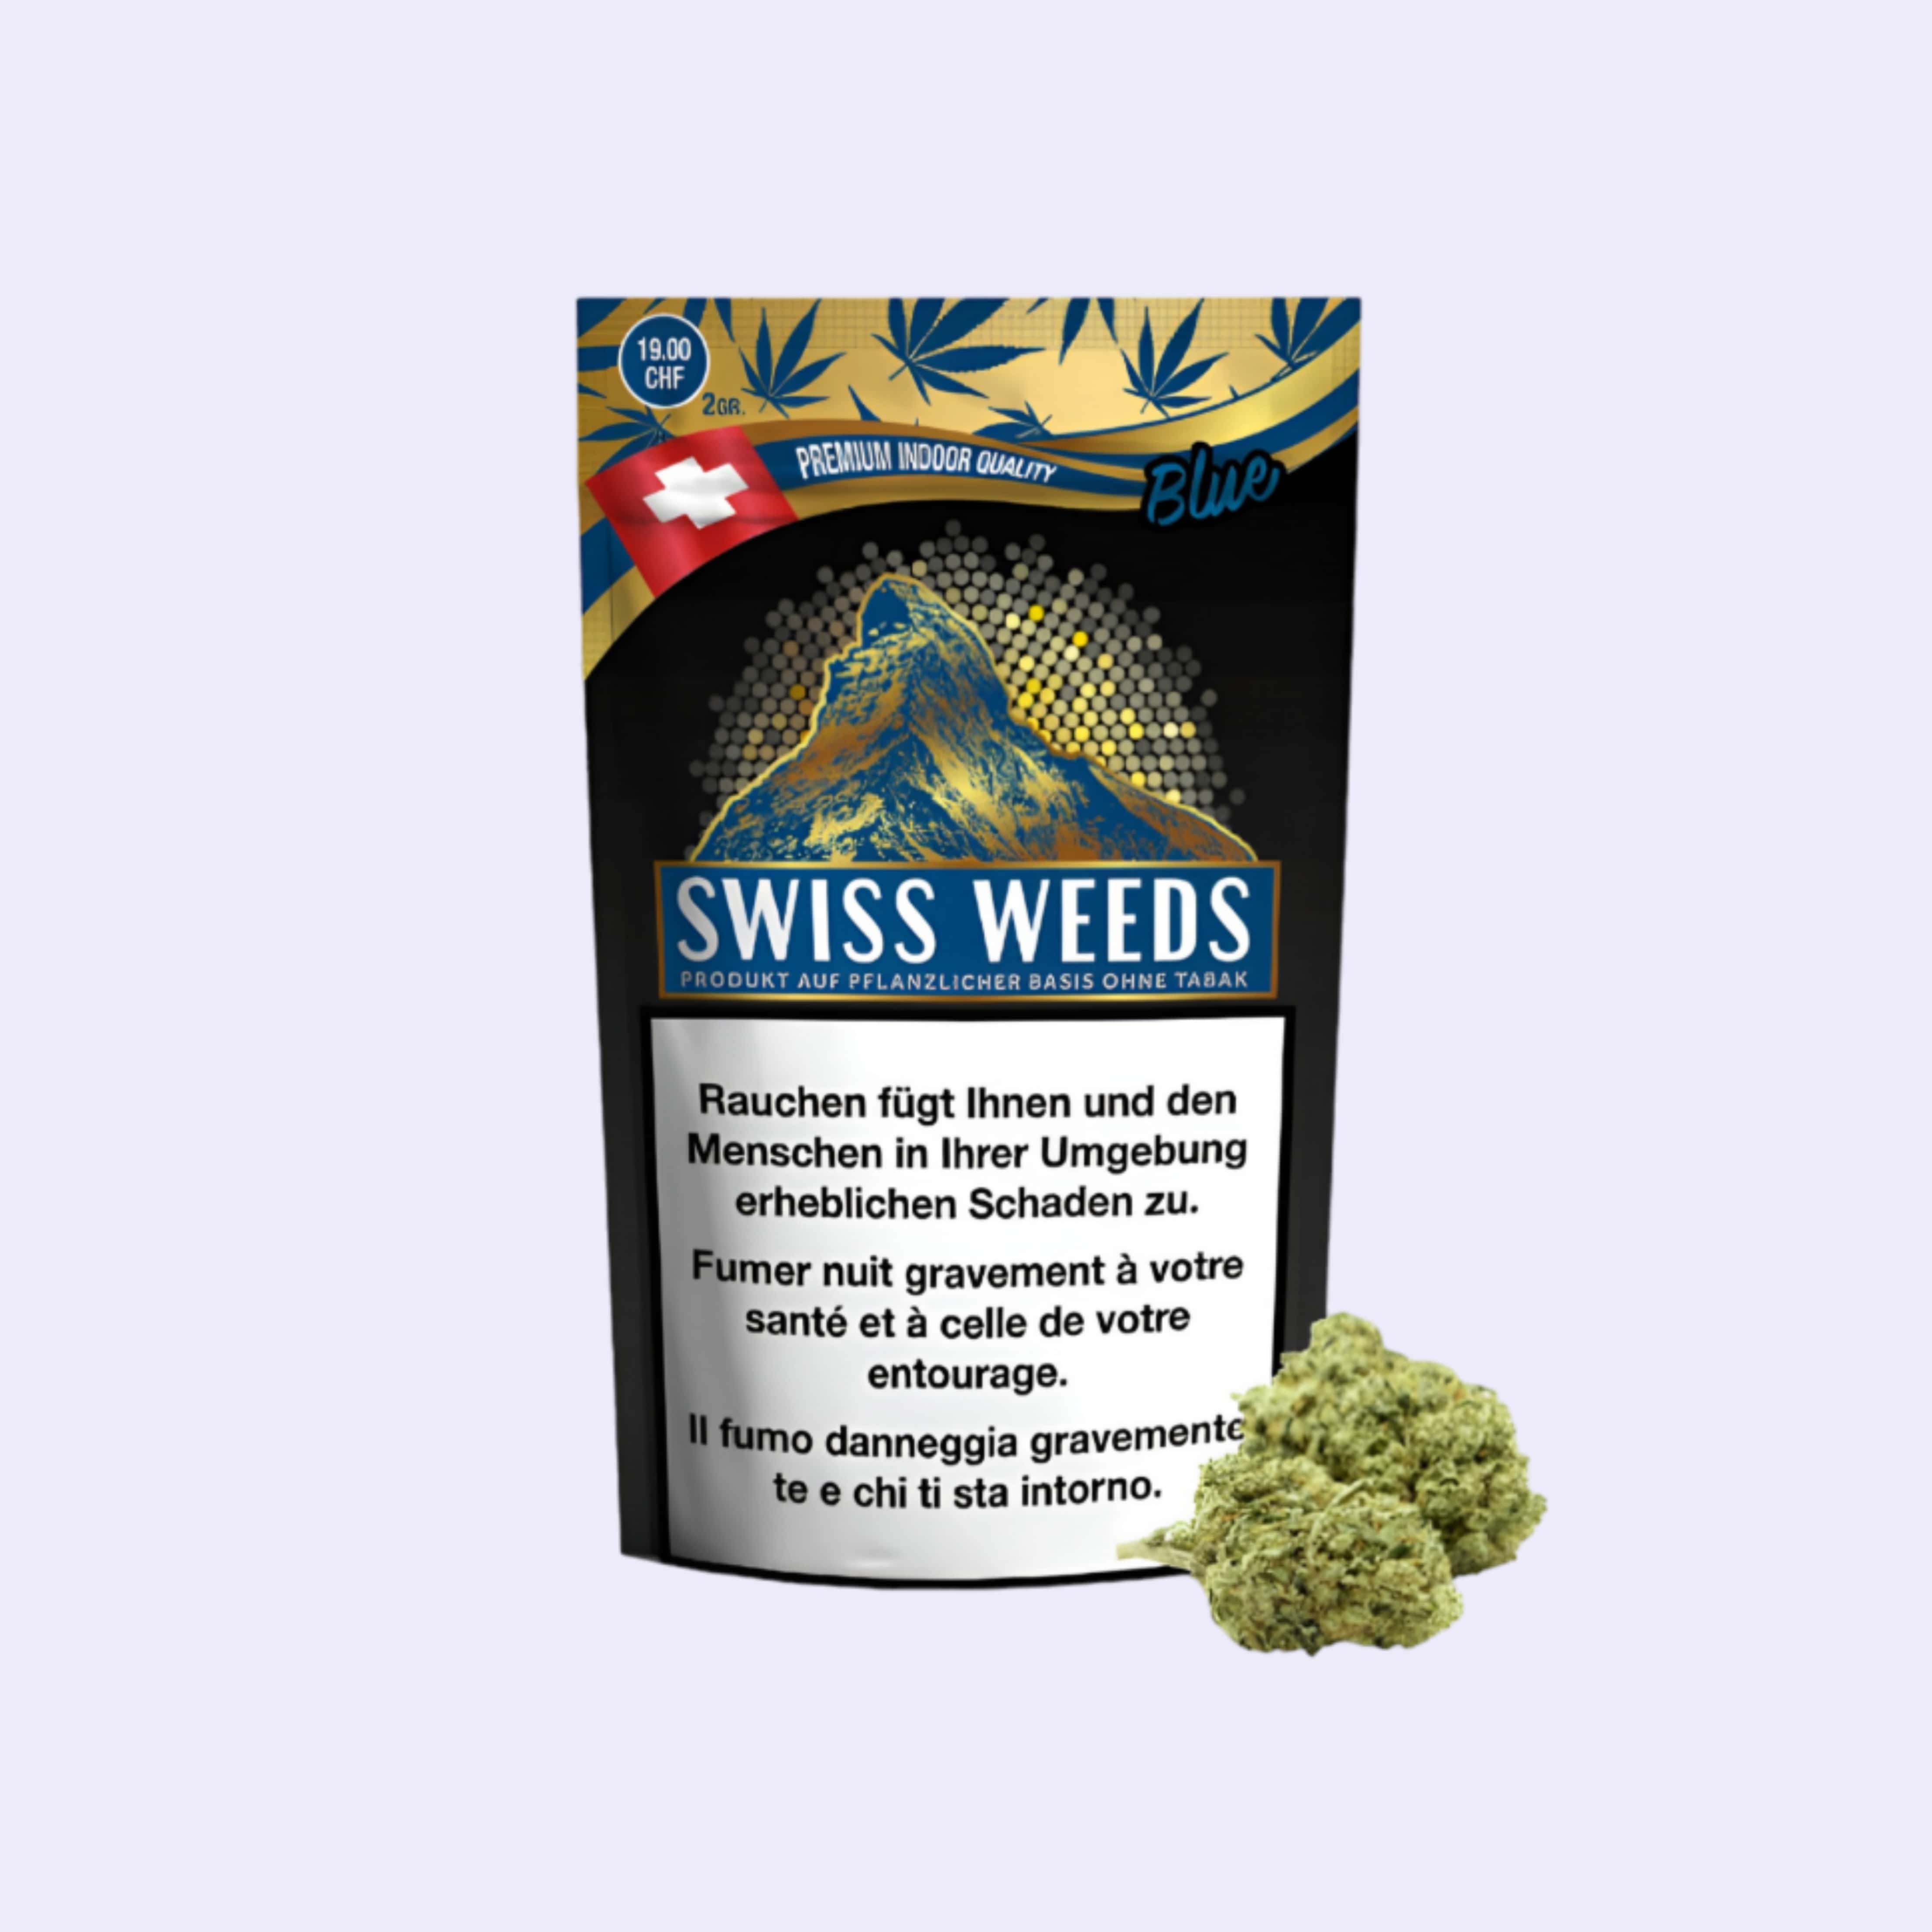 Dieses Bild zeigt die Indoor CBD Blüten Swiss Weeds Blue von der Firma Pure Europe